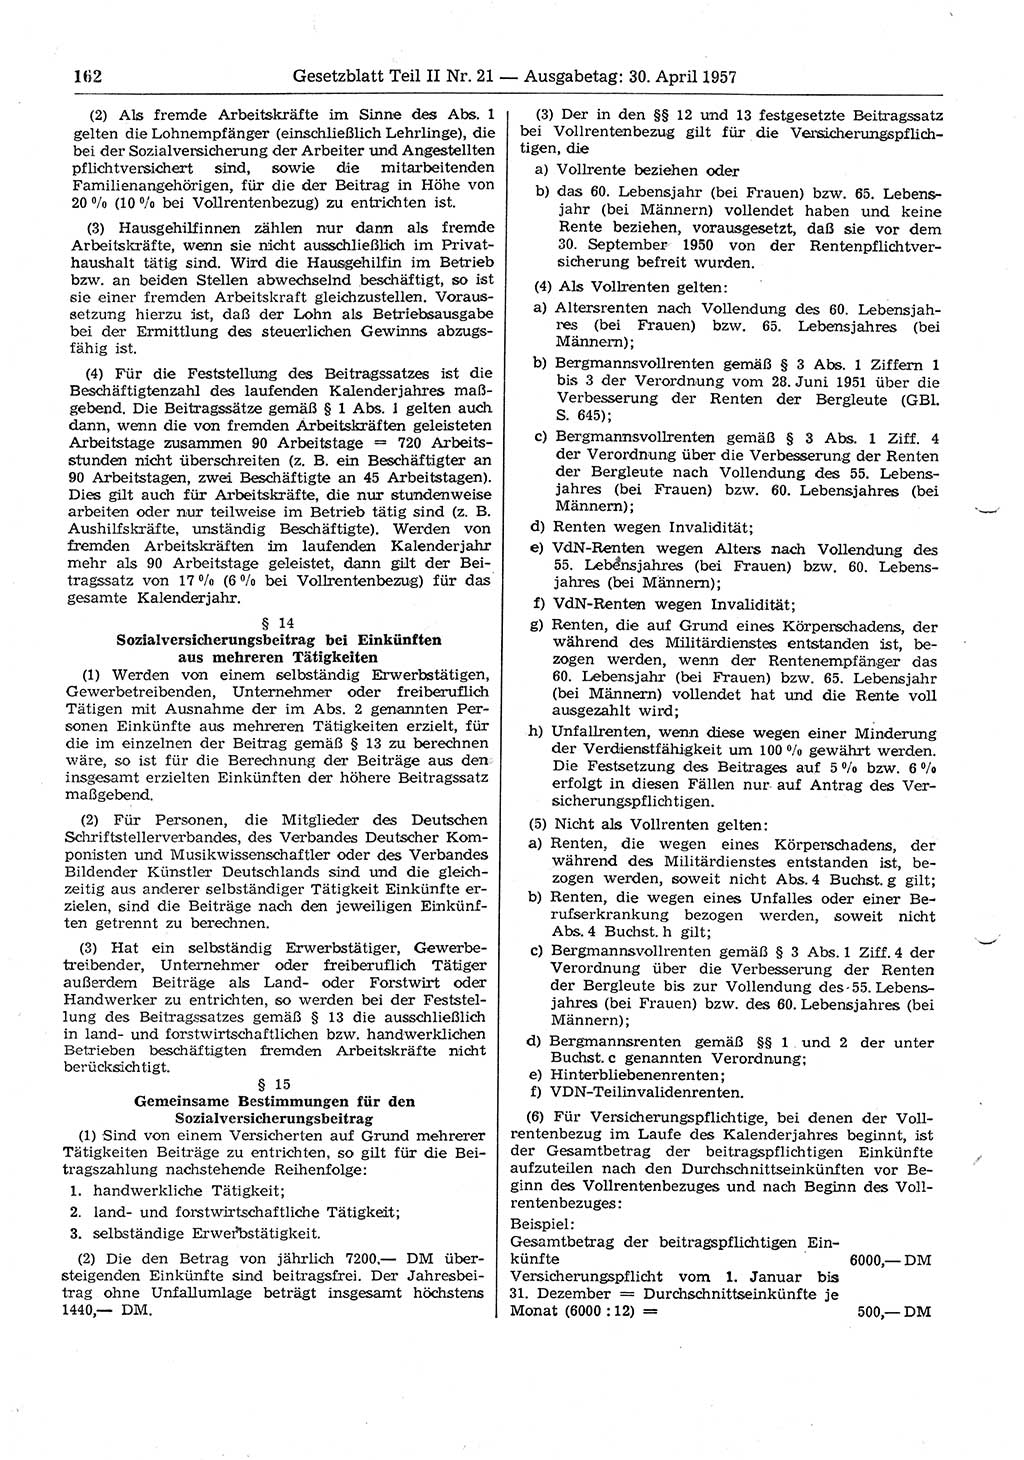 Gesetzblatt (GBl.) der Deutschen Demokratischen Republik (DDR) Teil ⅠⅠ 1957, Seite 162 (GBl. DDR ⅠⅠ 1957, S. 162)